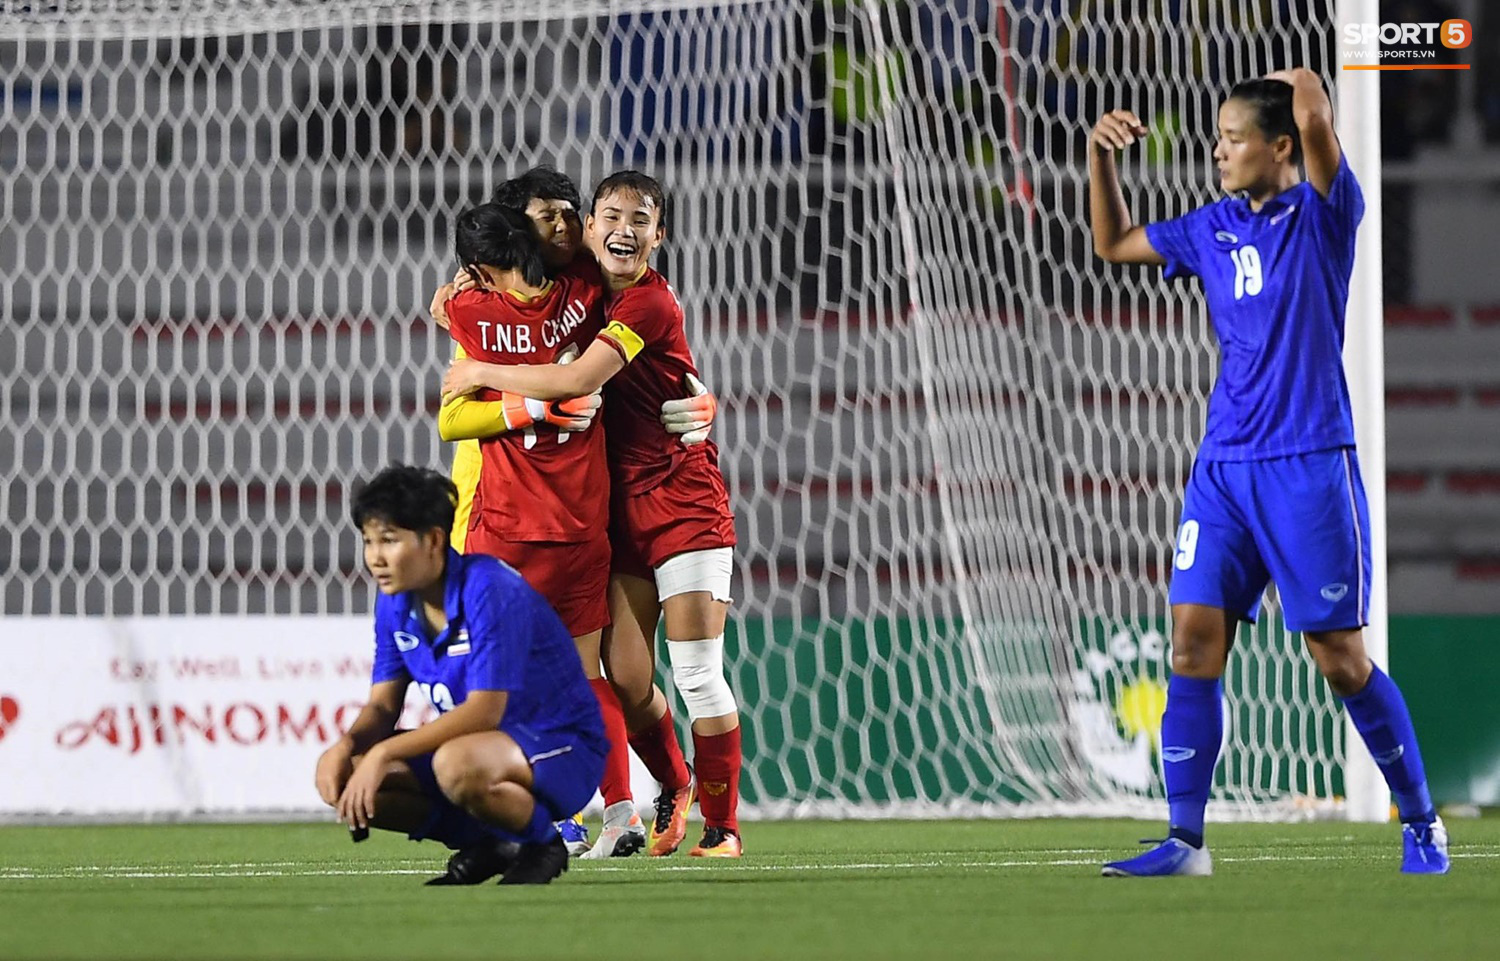 Thua 2 trận chung kết liên tiếp, HLV Thái Lan vẫn nói cứng: Tuyển nữ Việt Nam không mạnh hơn chúng tôi - Ảnh 2.